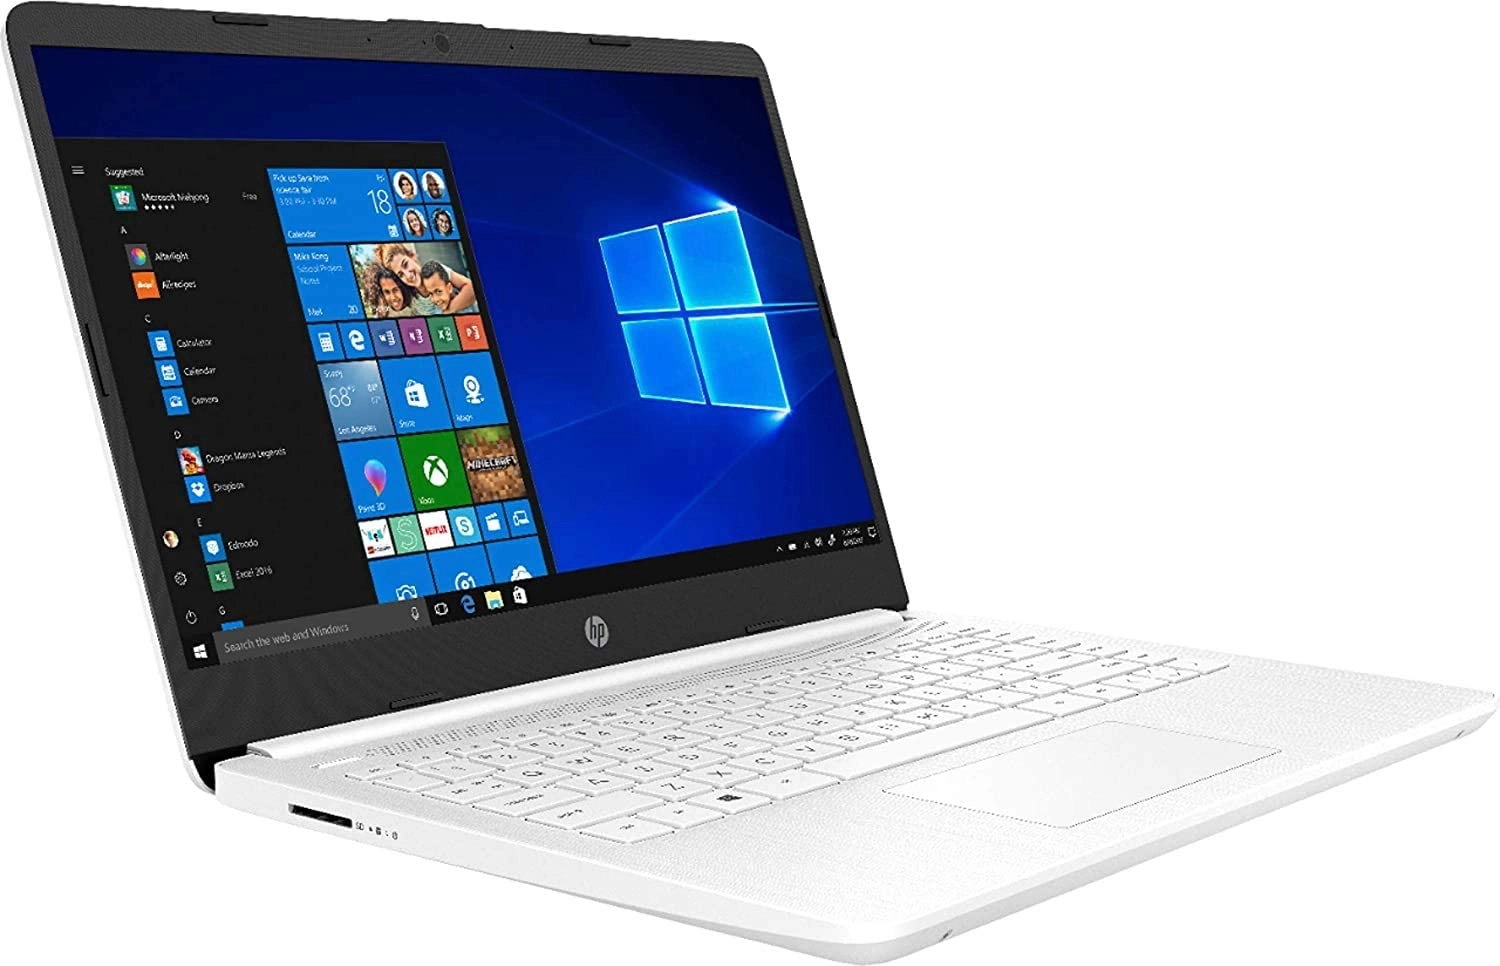 HP Dell Precision laptop image